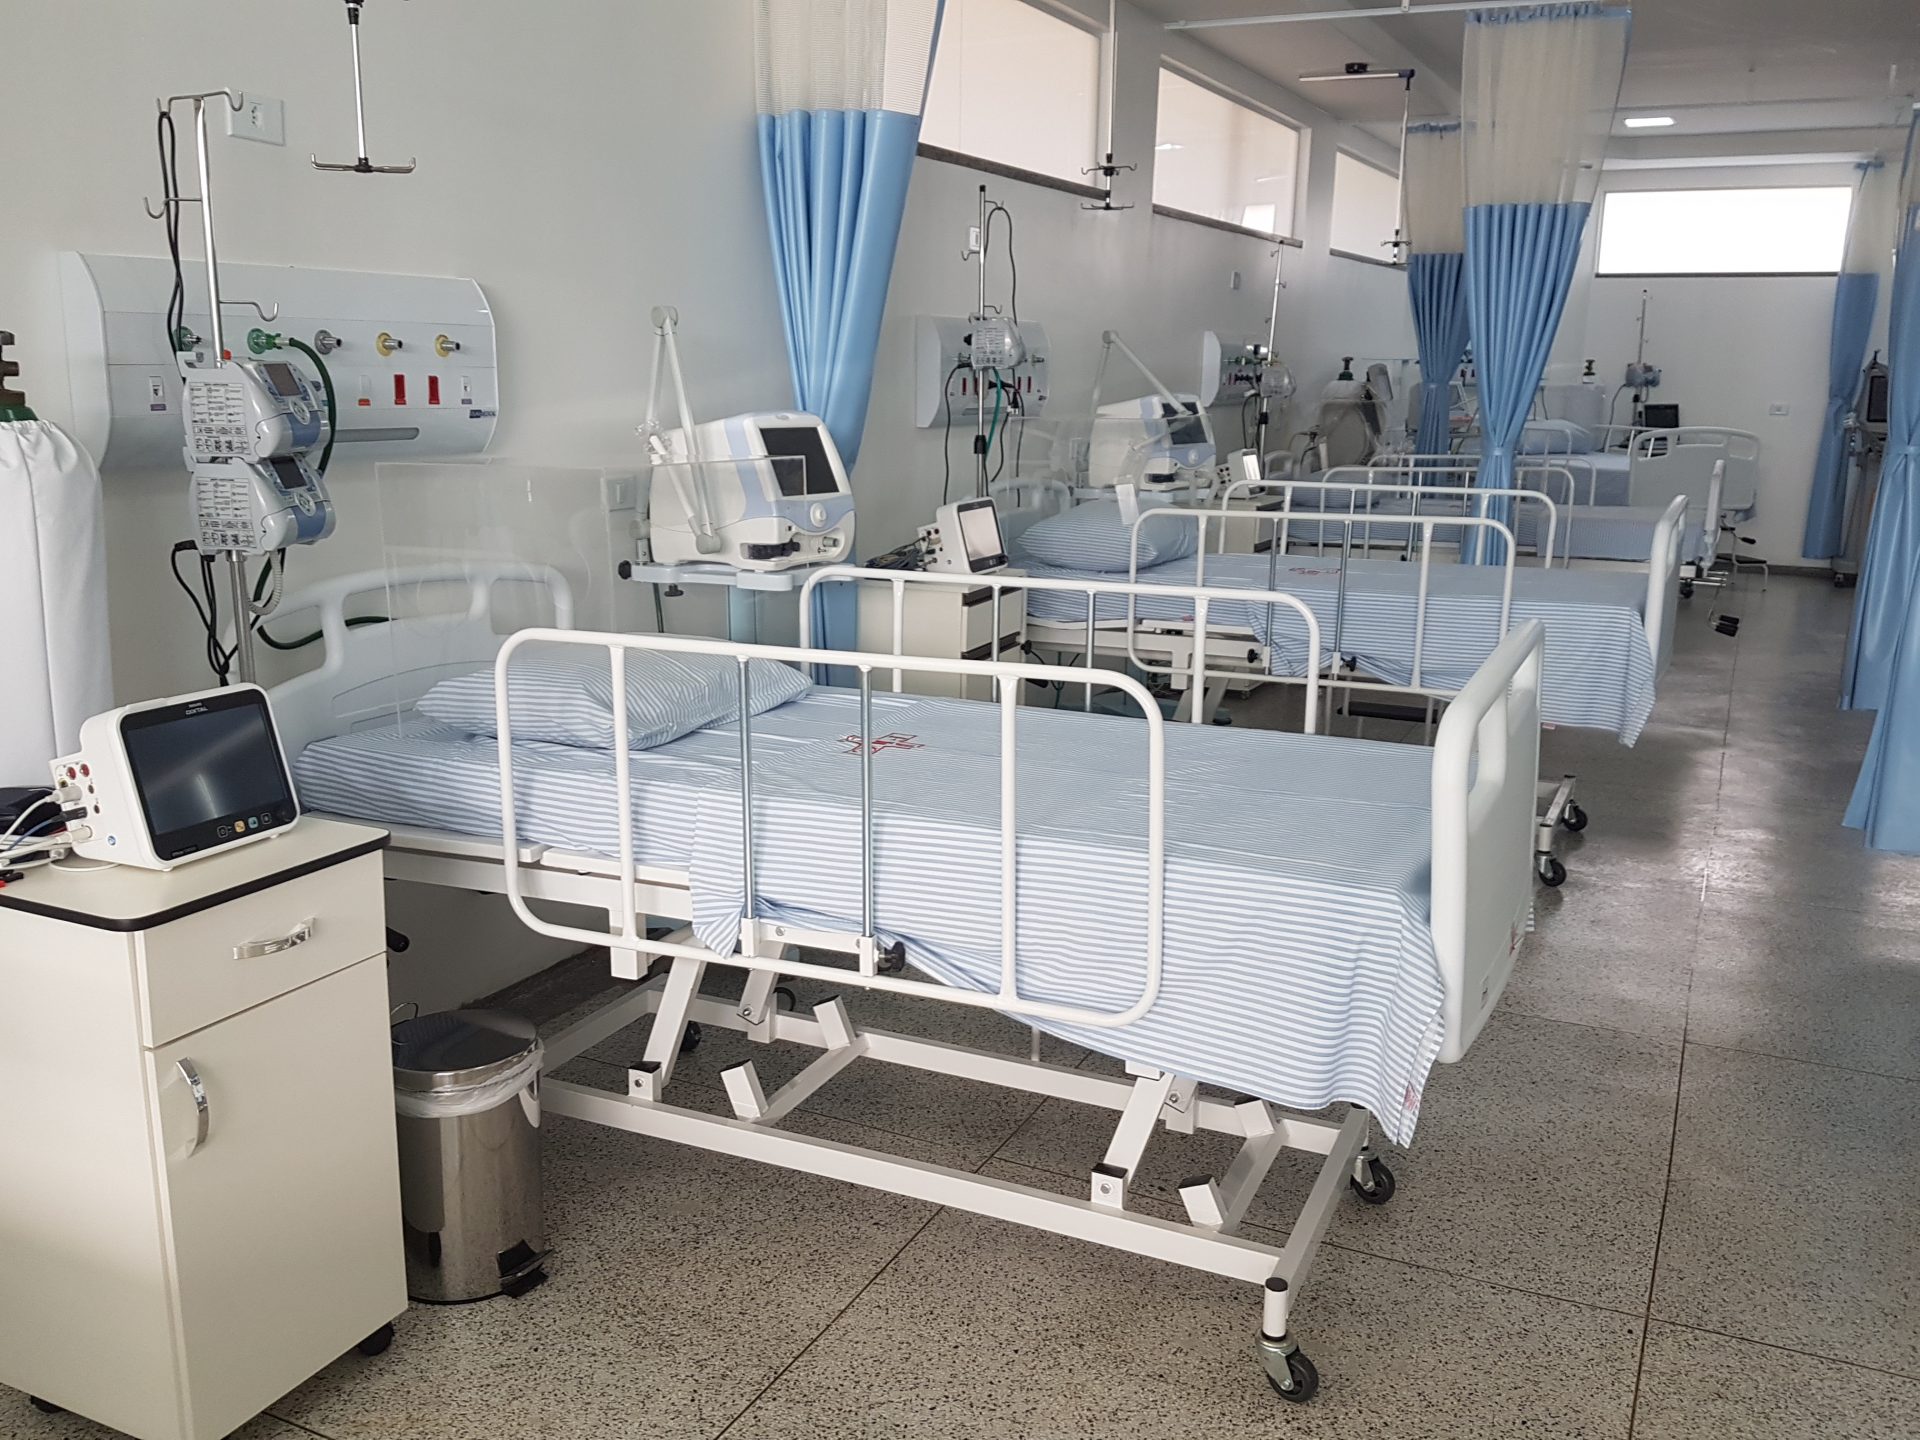 Hospital Evangélico: Desafios na gestão hospitalar se intensificaram  durante a pandemia da covid-19 - Folha de Dourados - Notícias de  Dourados-MS e região